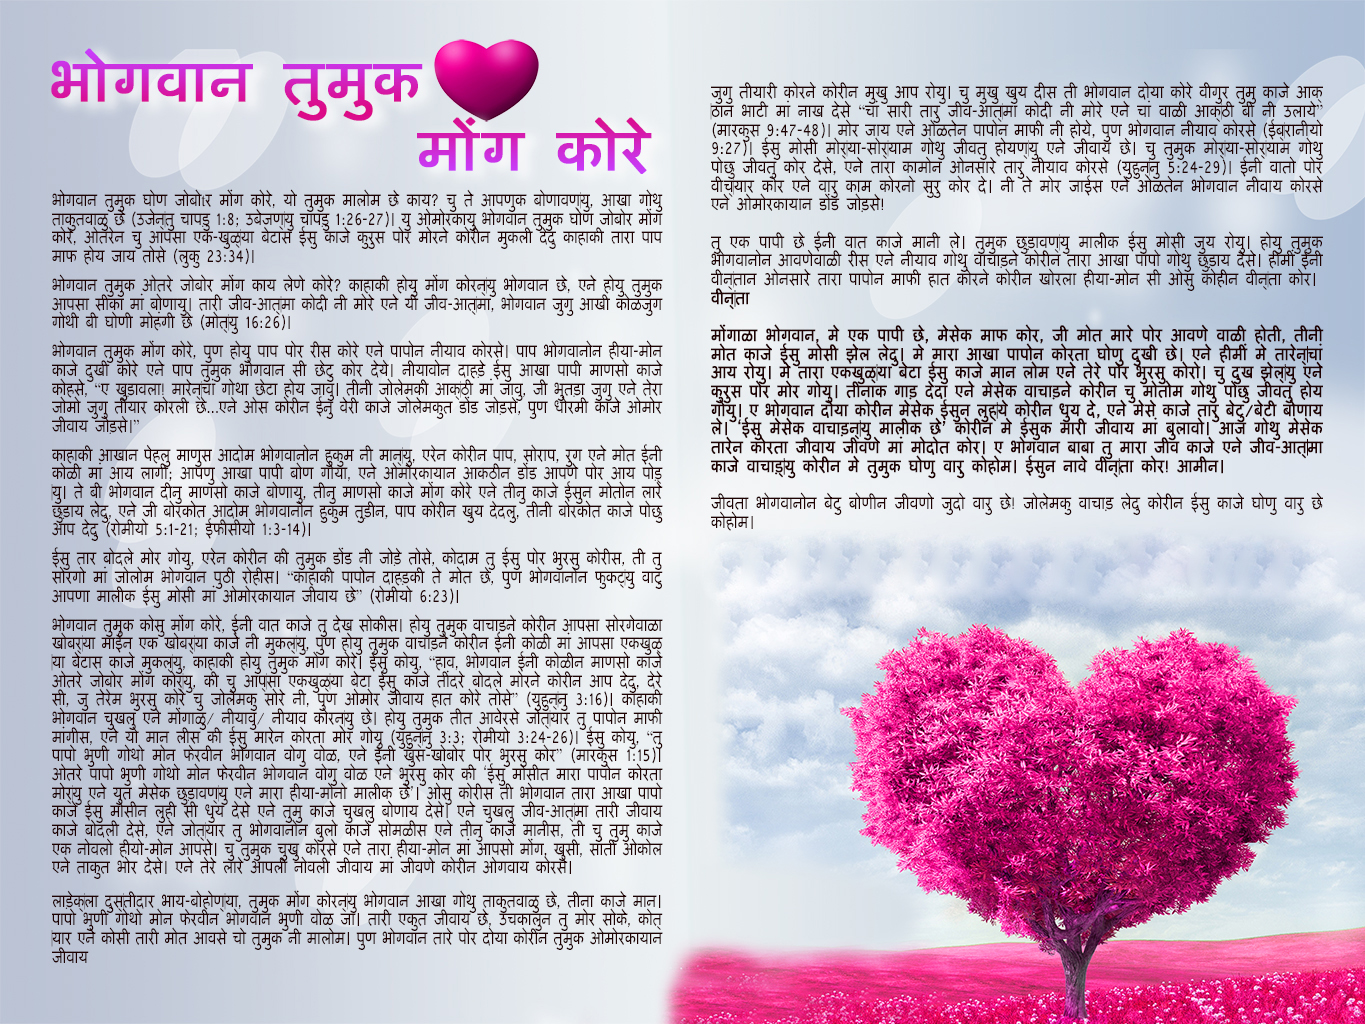 God-loves-you_Bhili1